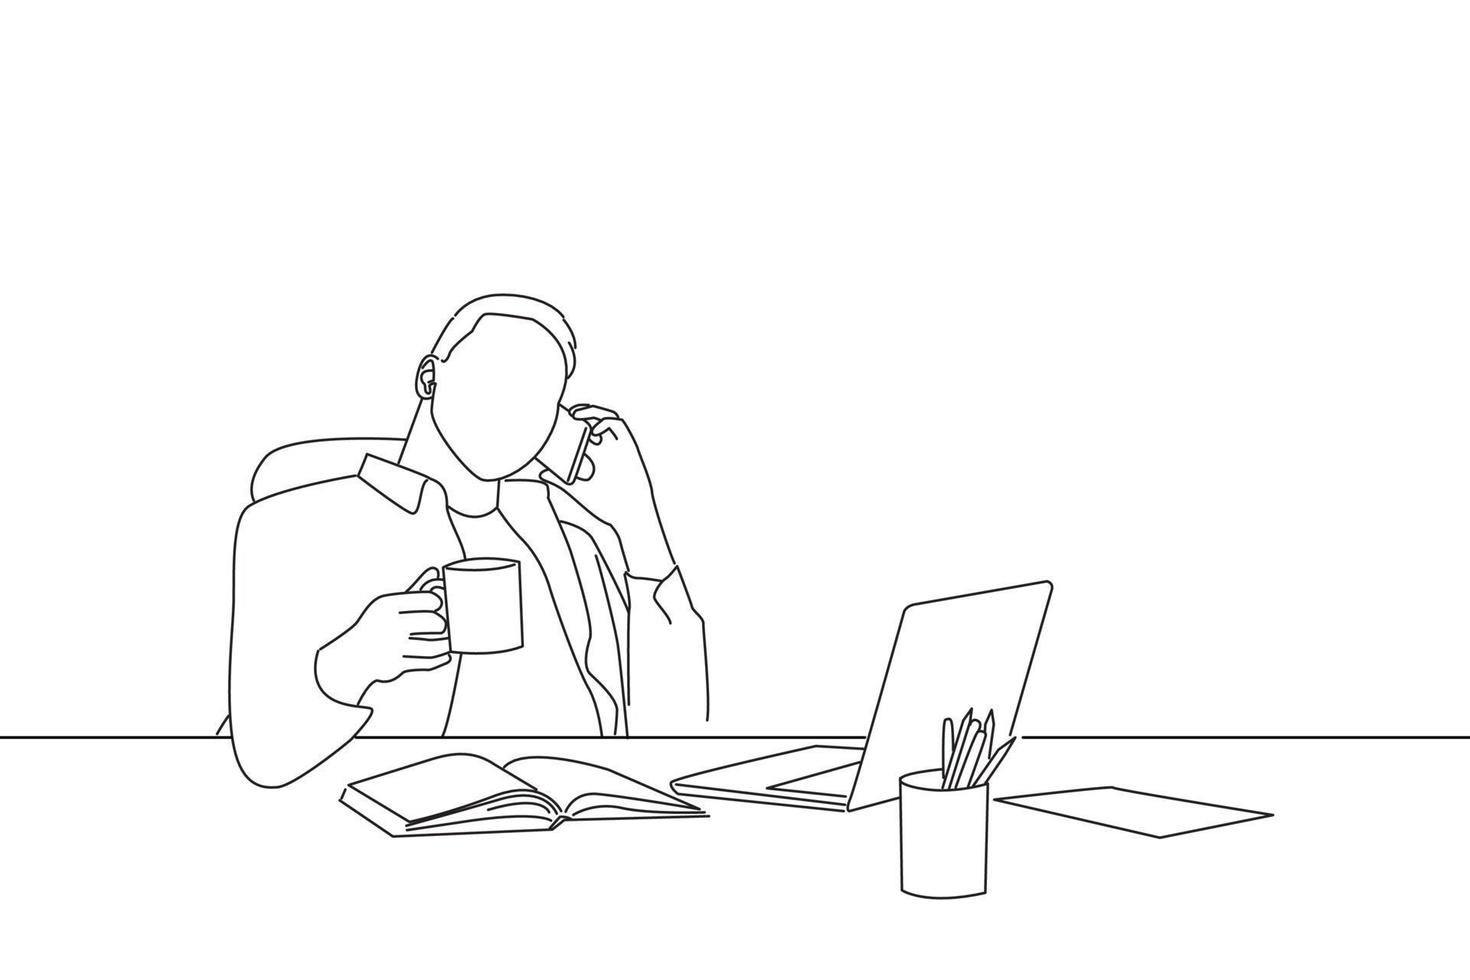 caricatura de un empleado alegre hablando por teléfono y sosteniendo una taza con una bebida caliente tomando un descanso para tomar café. estilo de arte lineal vector